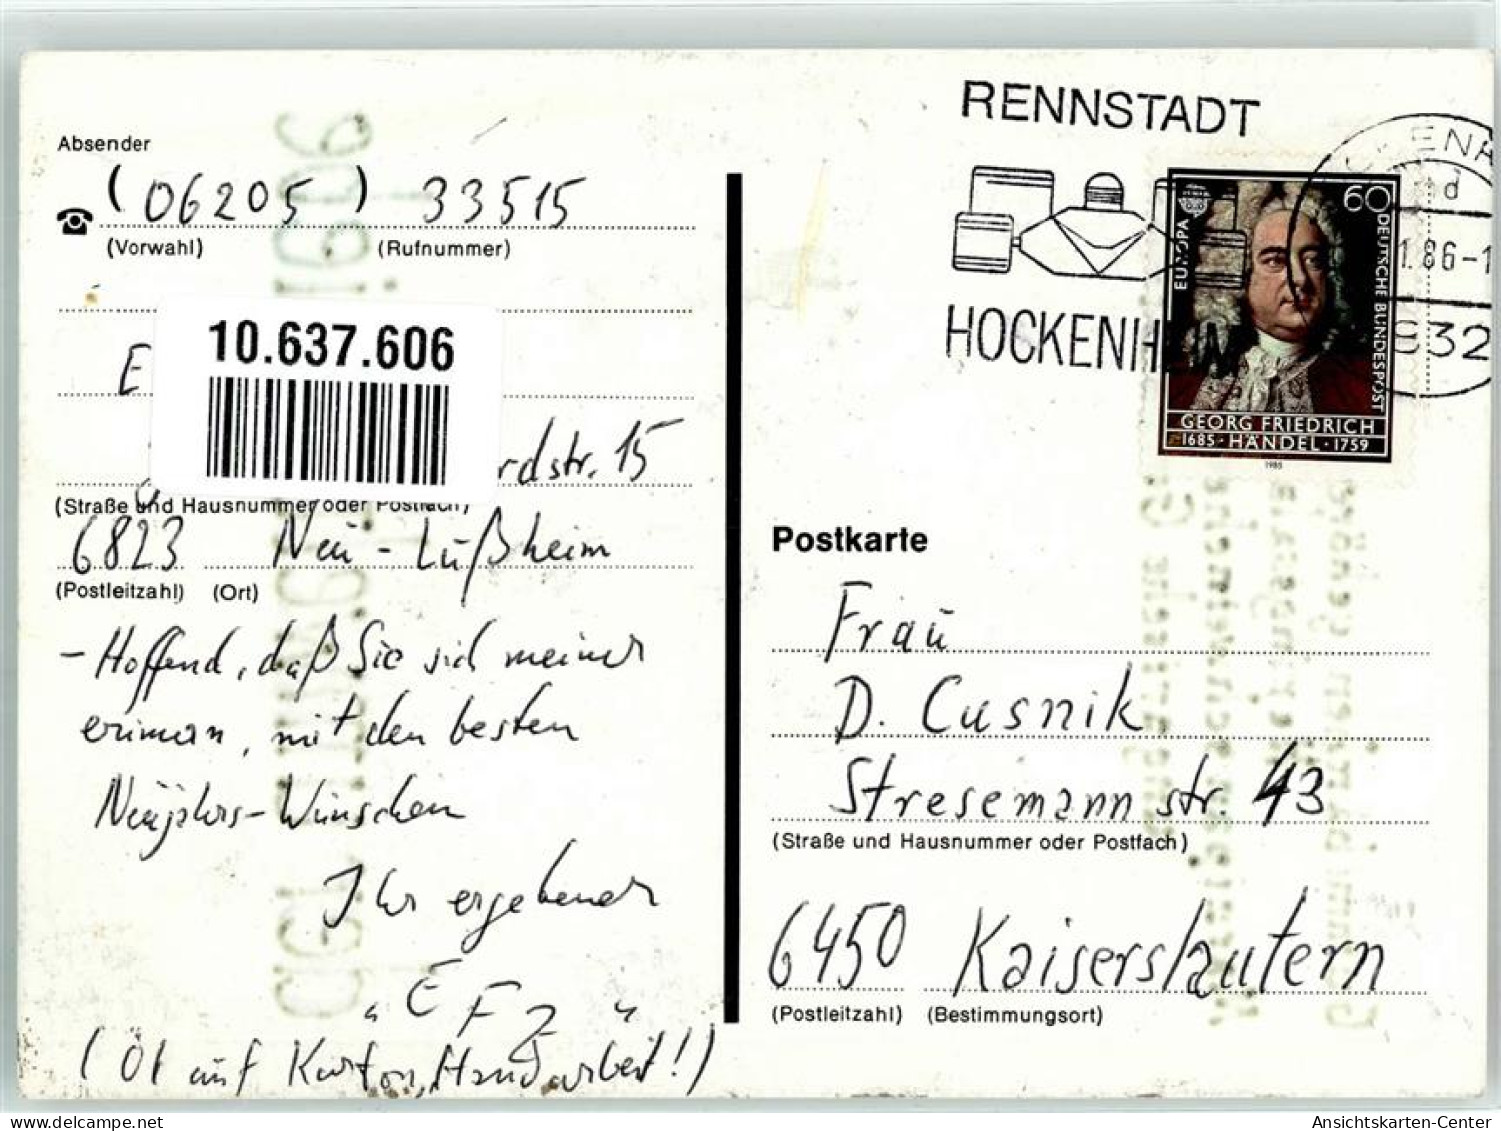 10637606 - Handgemalt Gummibaerchen Herzen Umwelt Sign EFZ - Cochons